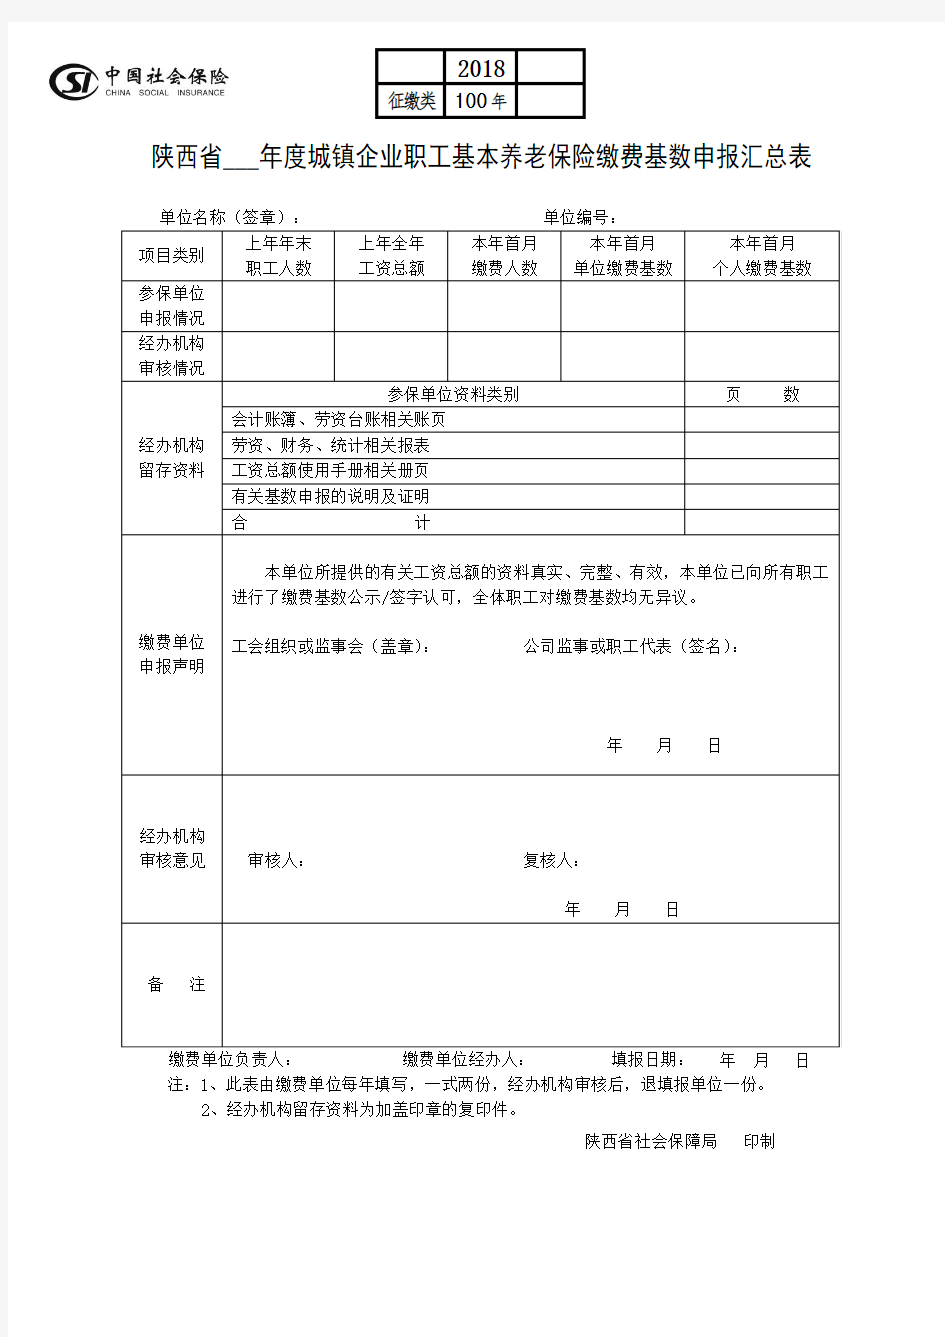 陕西省--年度城镇企业职工基本养老保险缴费基数申报汇总表